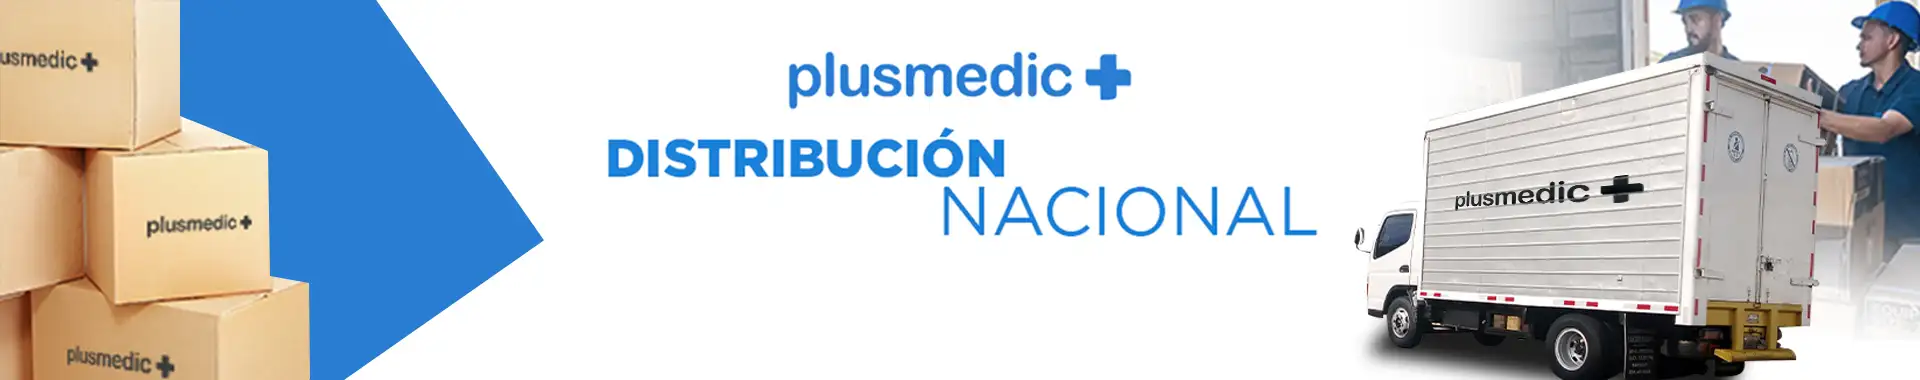 Imagen 2 del perfil de Plusmedic